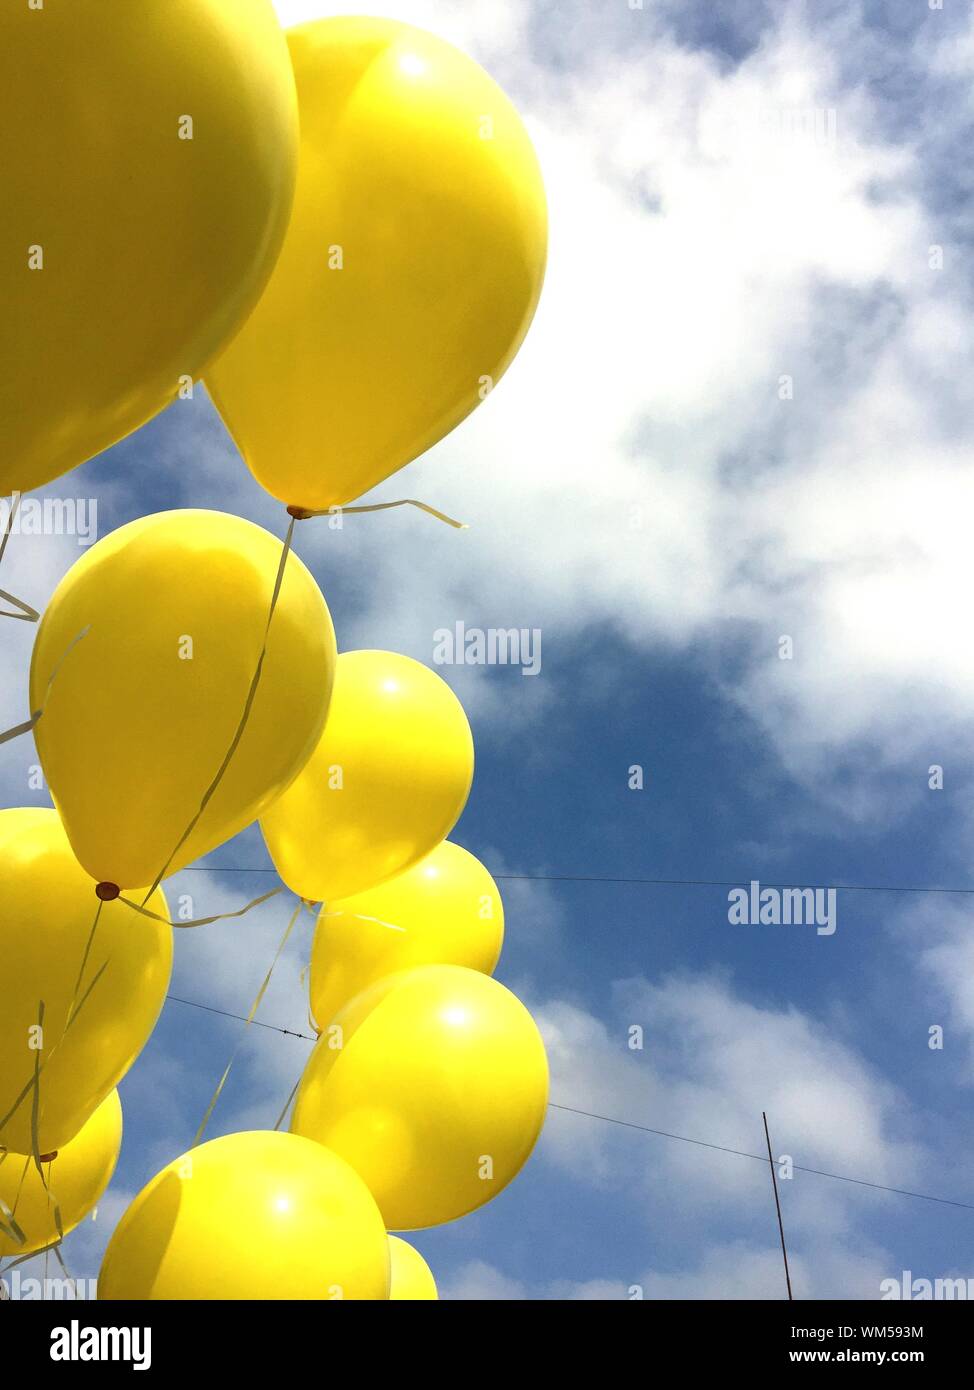 Palloncini in aria immagini e fotografie stock ad alta risoluzione - Alamy